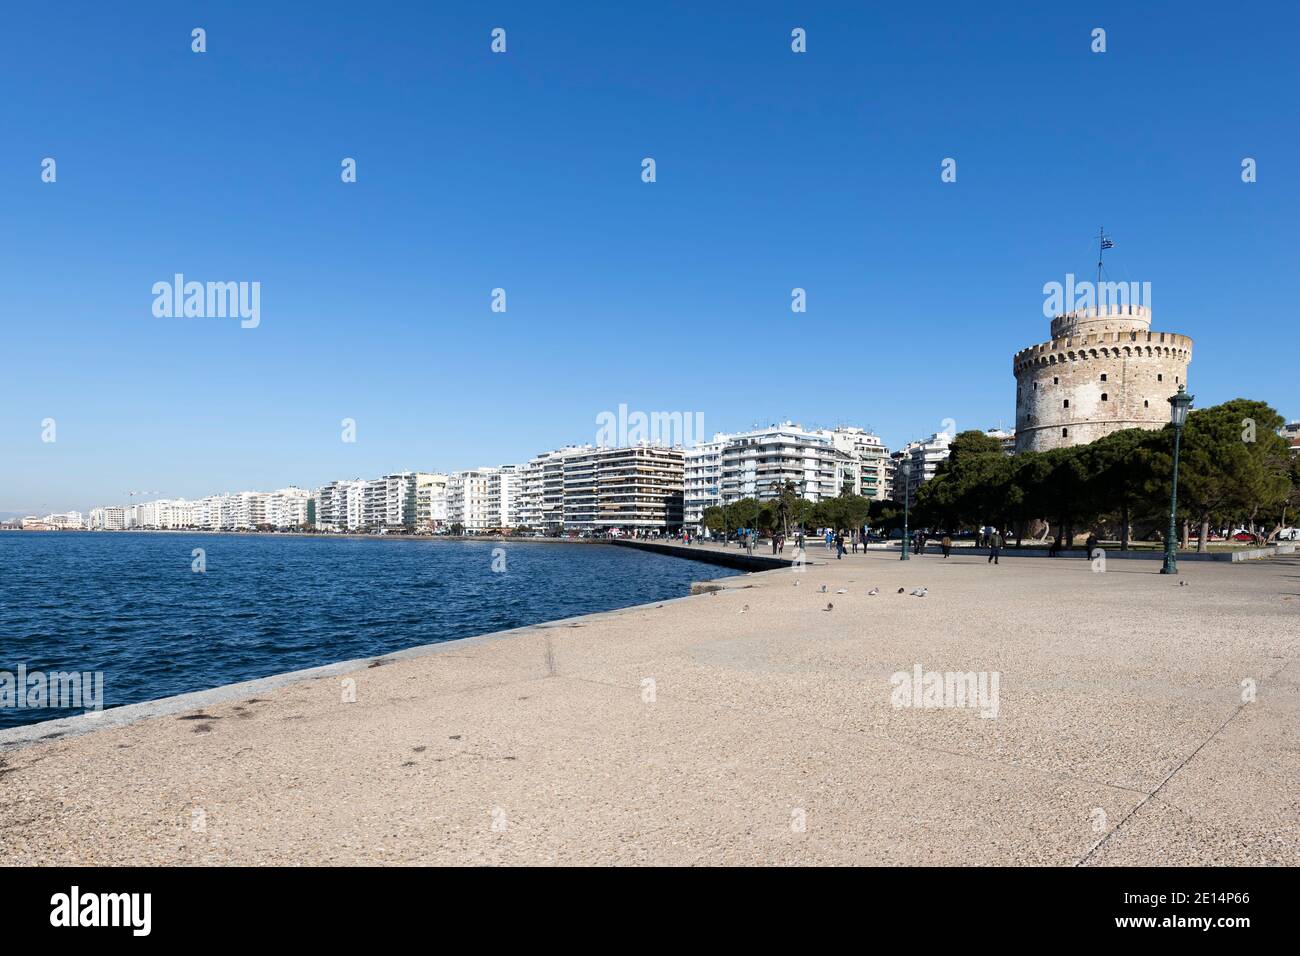 Le front de mer dans la ville de Thessalonique, Grèce. Mer Méditerranée Banque D'Images